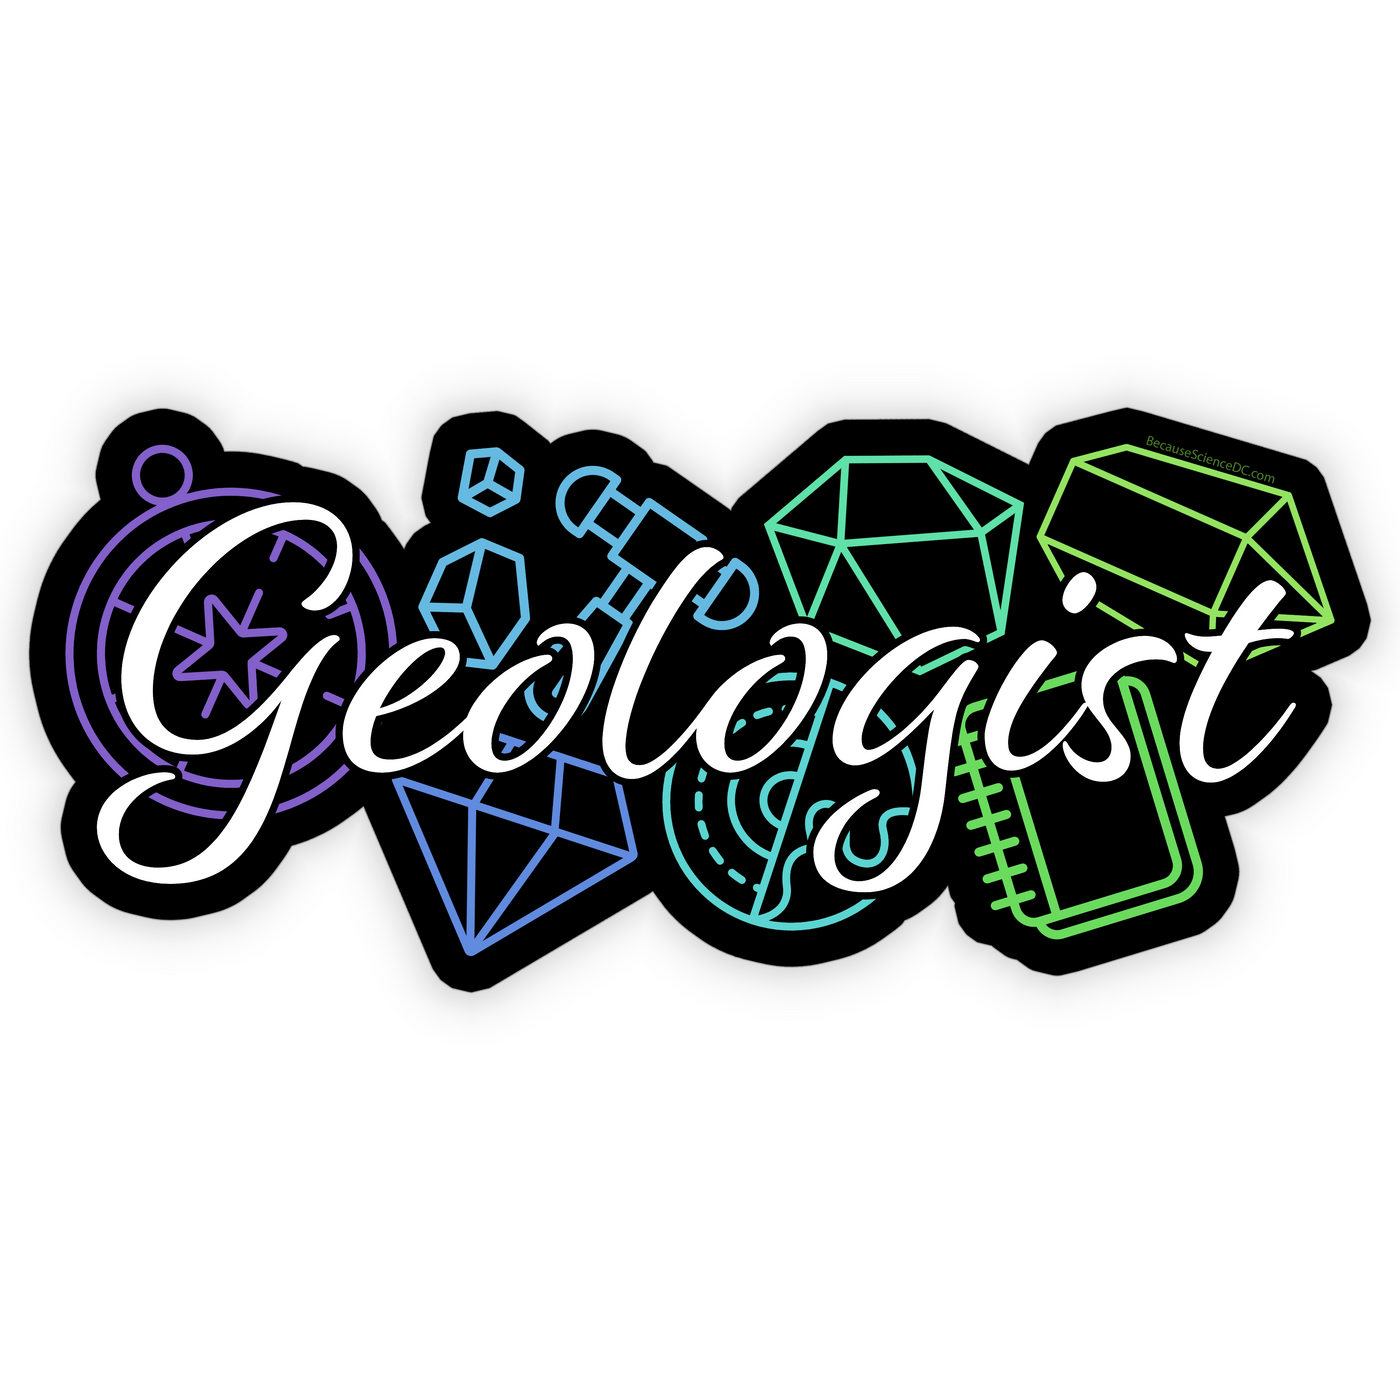 Geologist - Vinyl Sticker